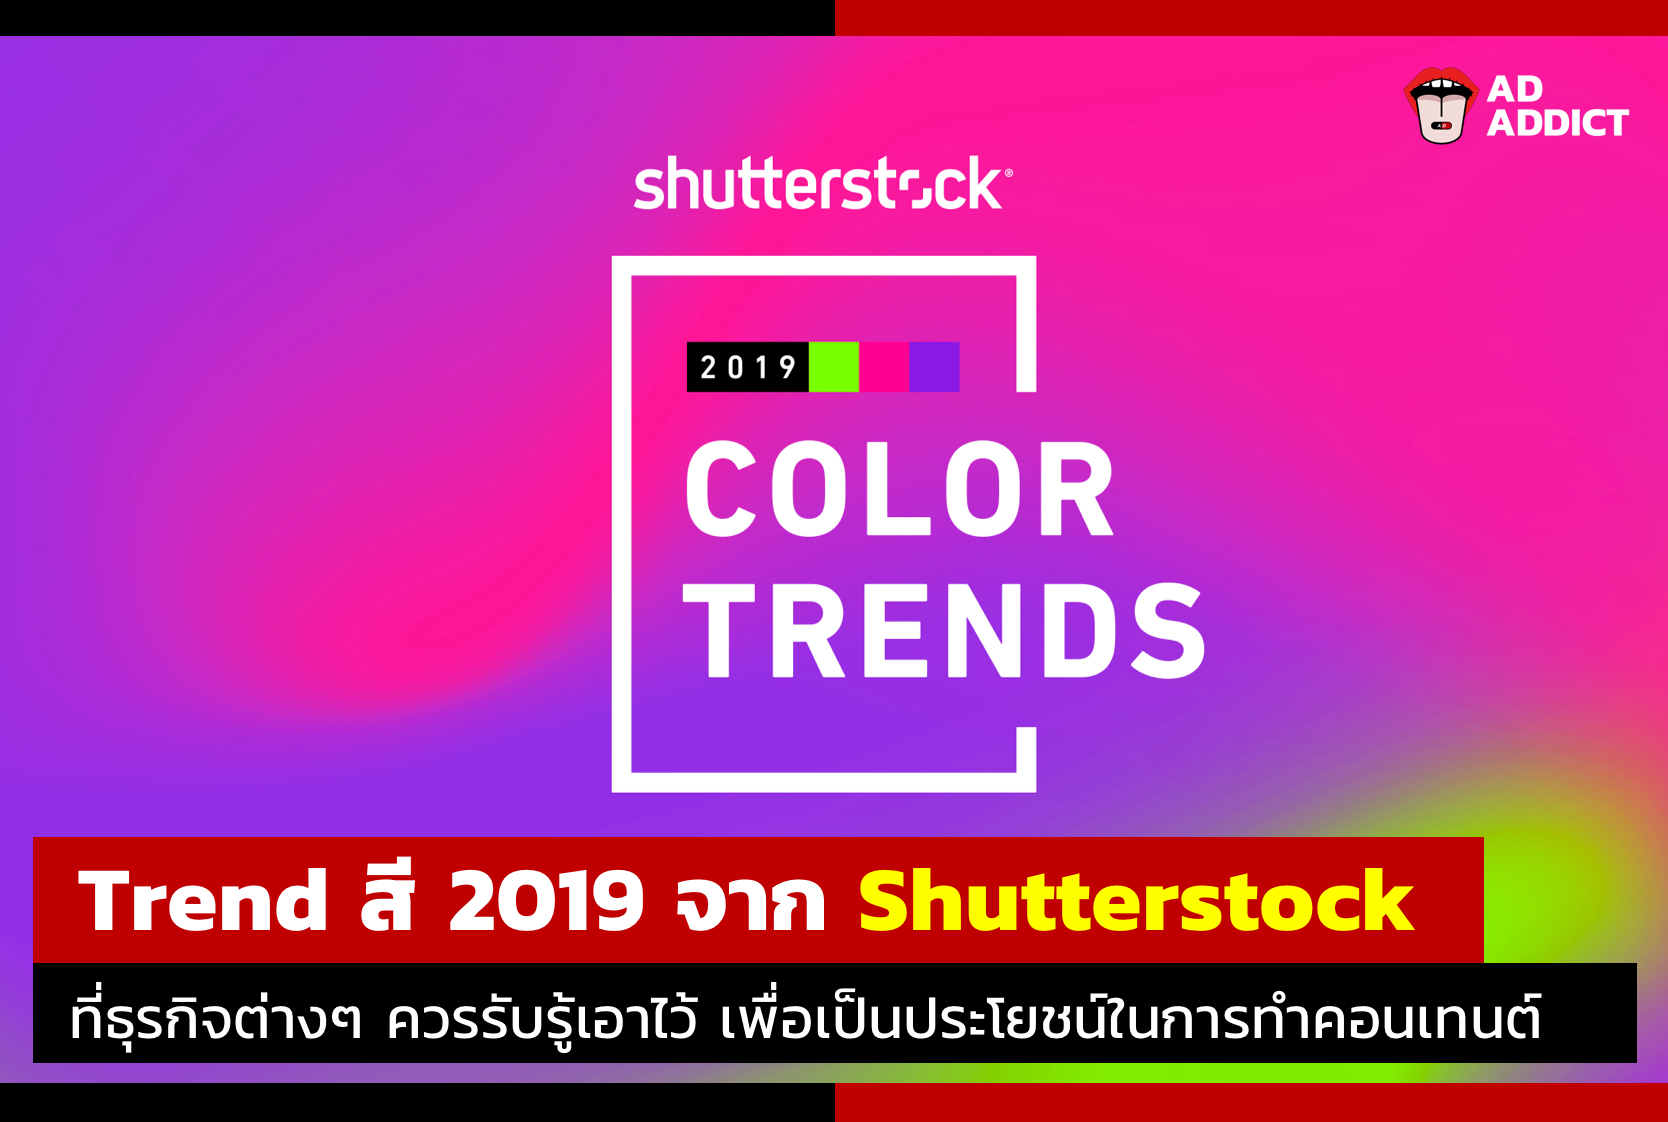 Trend สี 2019 จาก Shutterstock ที่นักการตลาดควรรู้เอาไว้เพื่อเป็นประโยชน์ในการทำคอนเทนต์!